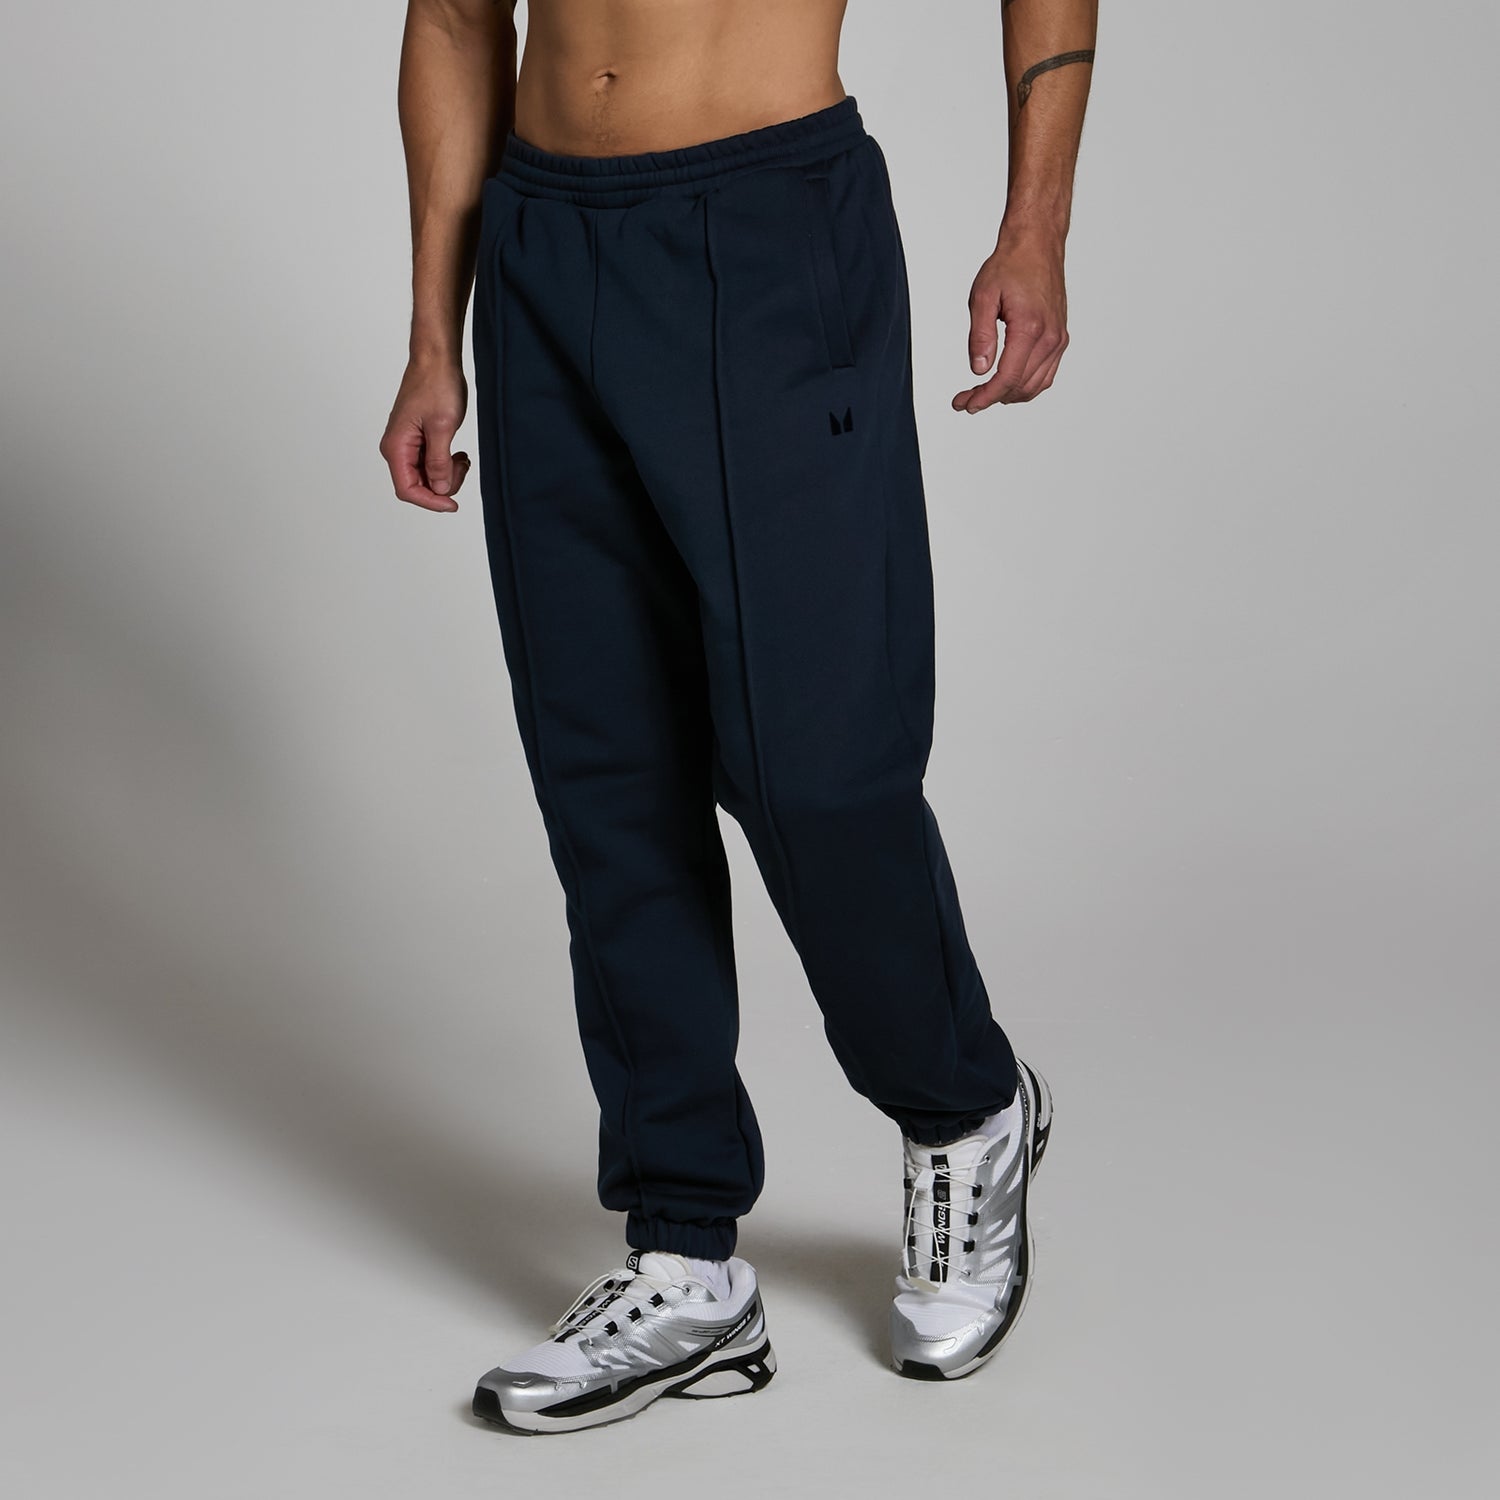 Lifestyle生活方式系列男士超大版型厚实运动裤 - 深海军蓝 - XS